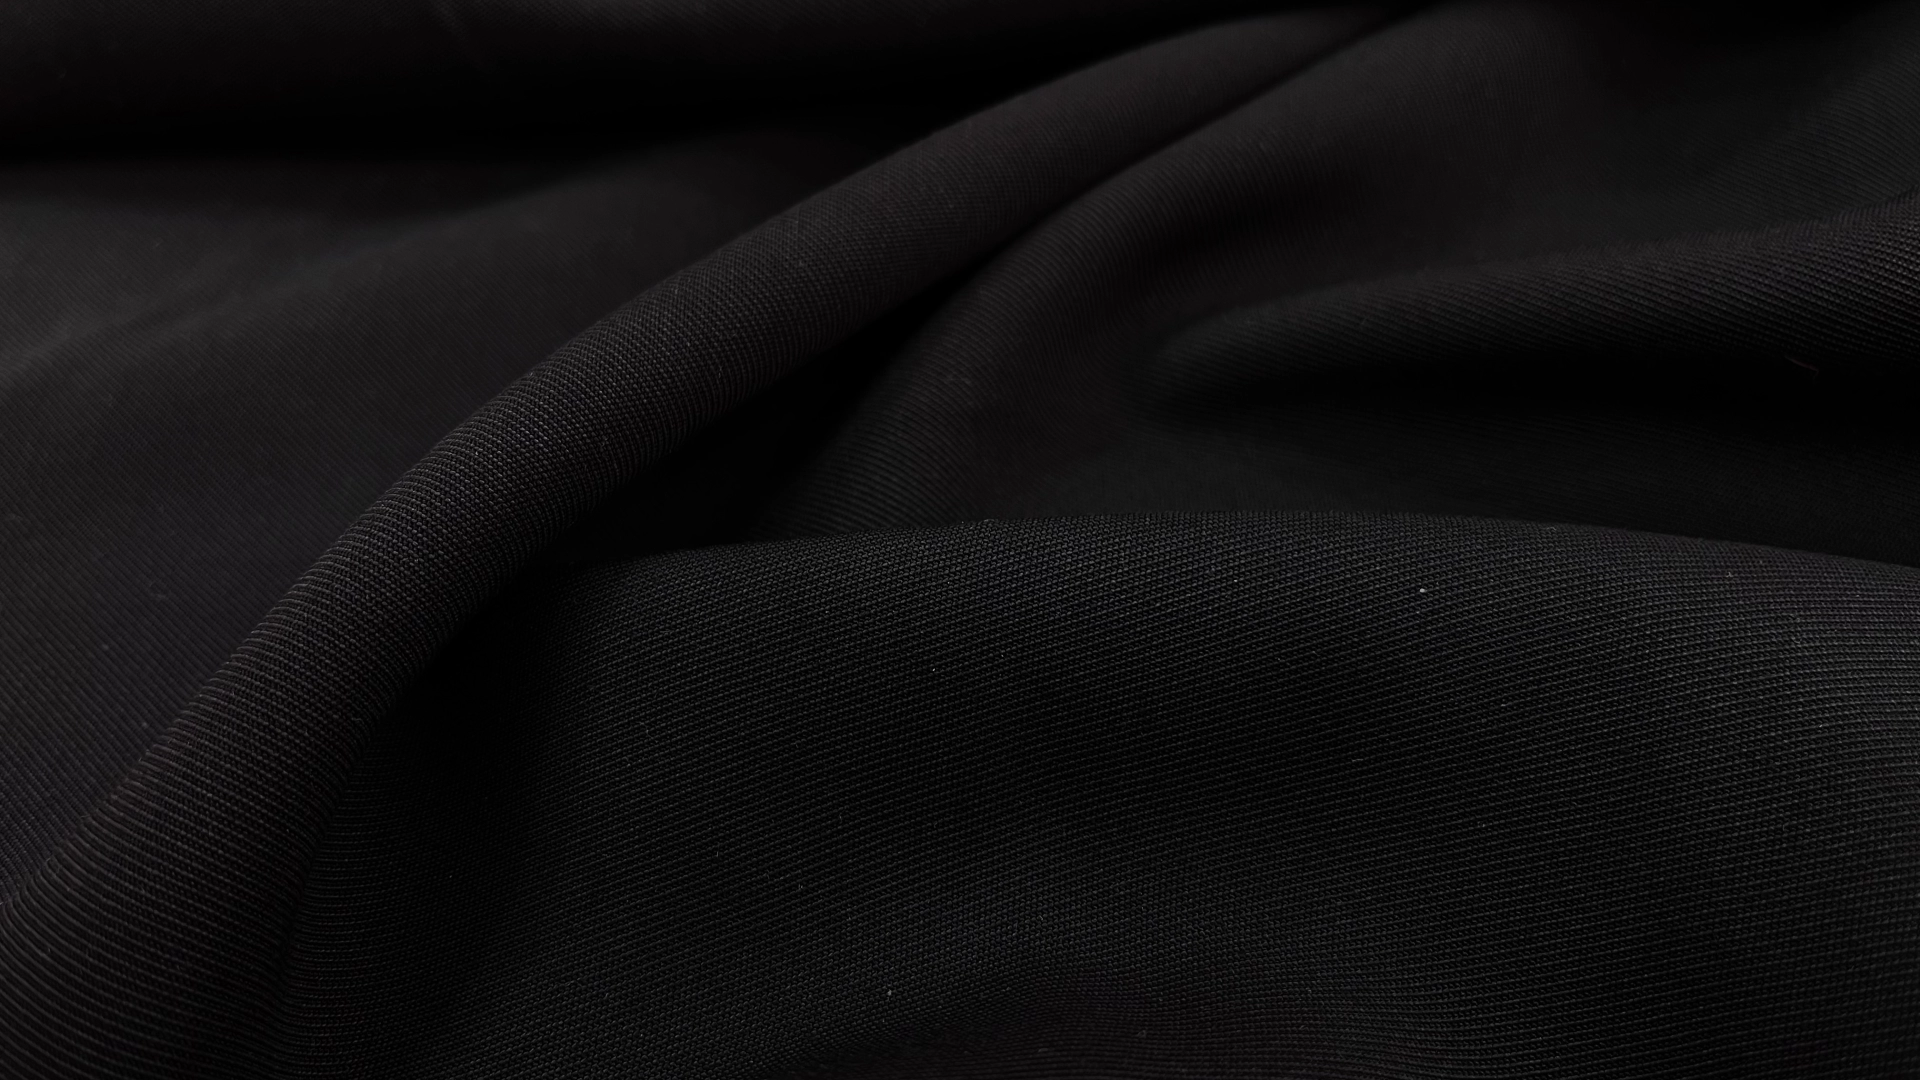 Костюмная ткань с диагональной выработкой черного цвета. За счет нейлона в составе держит форму, хорошо струится. Подойдет для пошива брюк со стрелкой, жакета или юбки "по-косой".